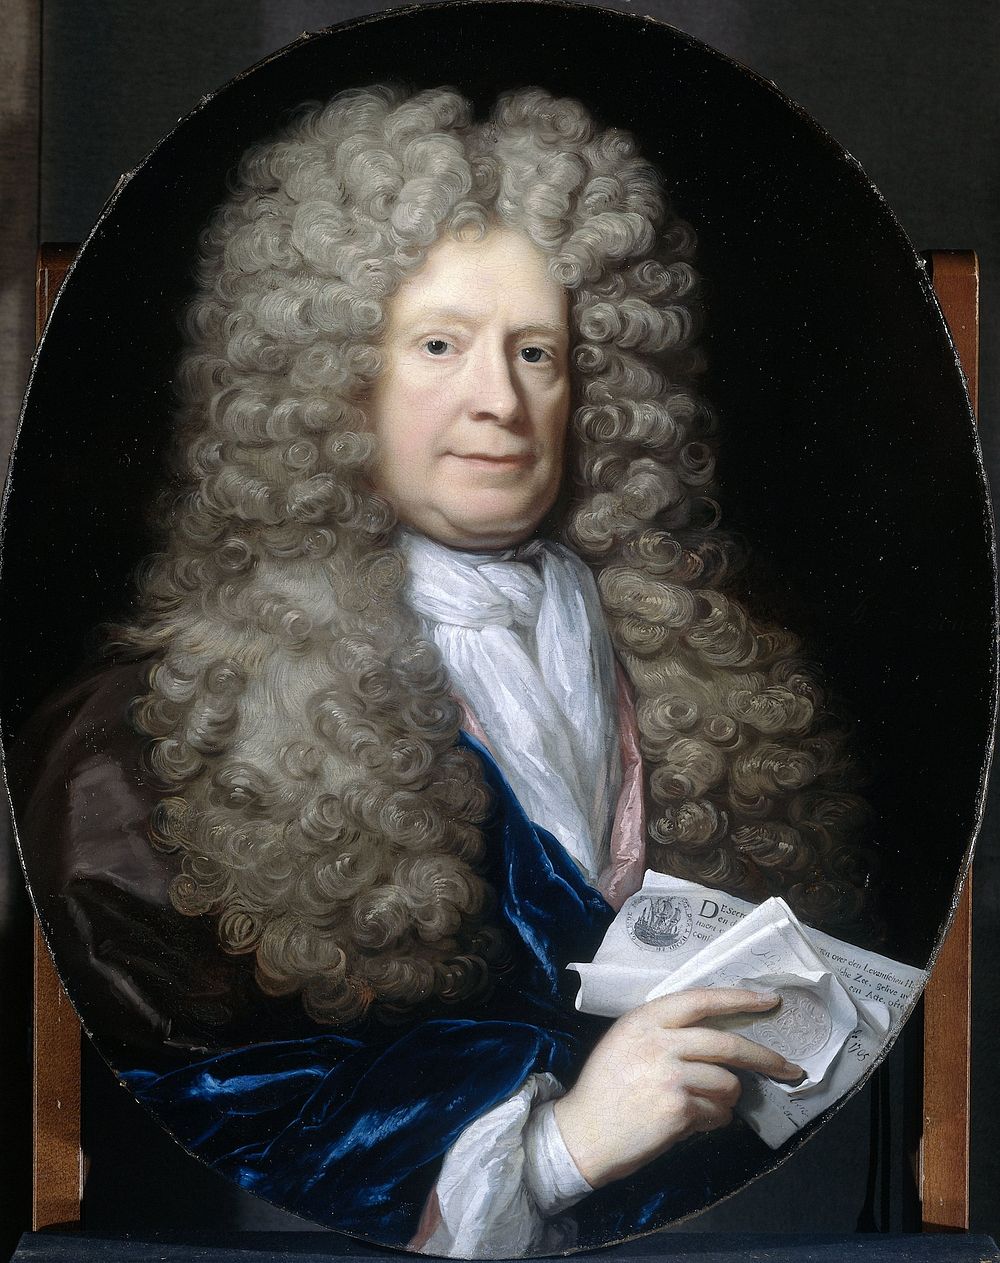 Portrait of Pieter van de Poel (1654-1710) (1690 - 1729) by Arnold Boonen